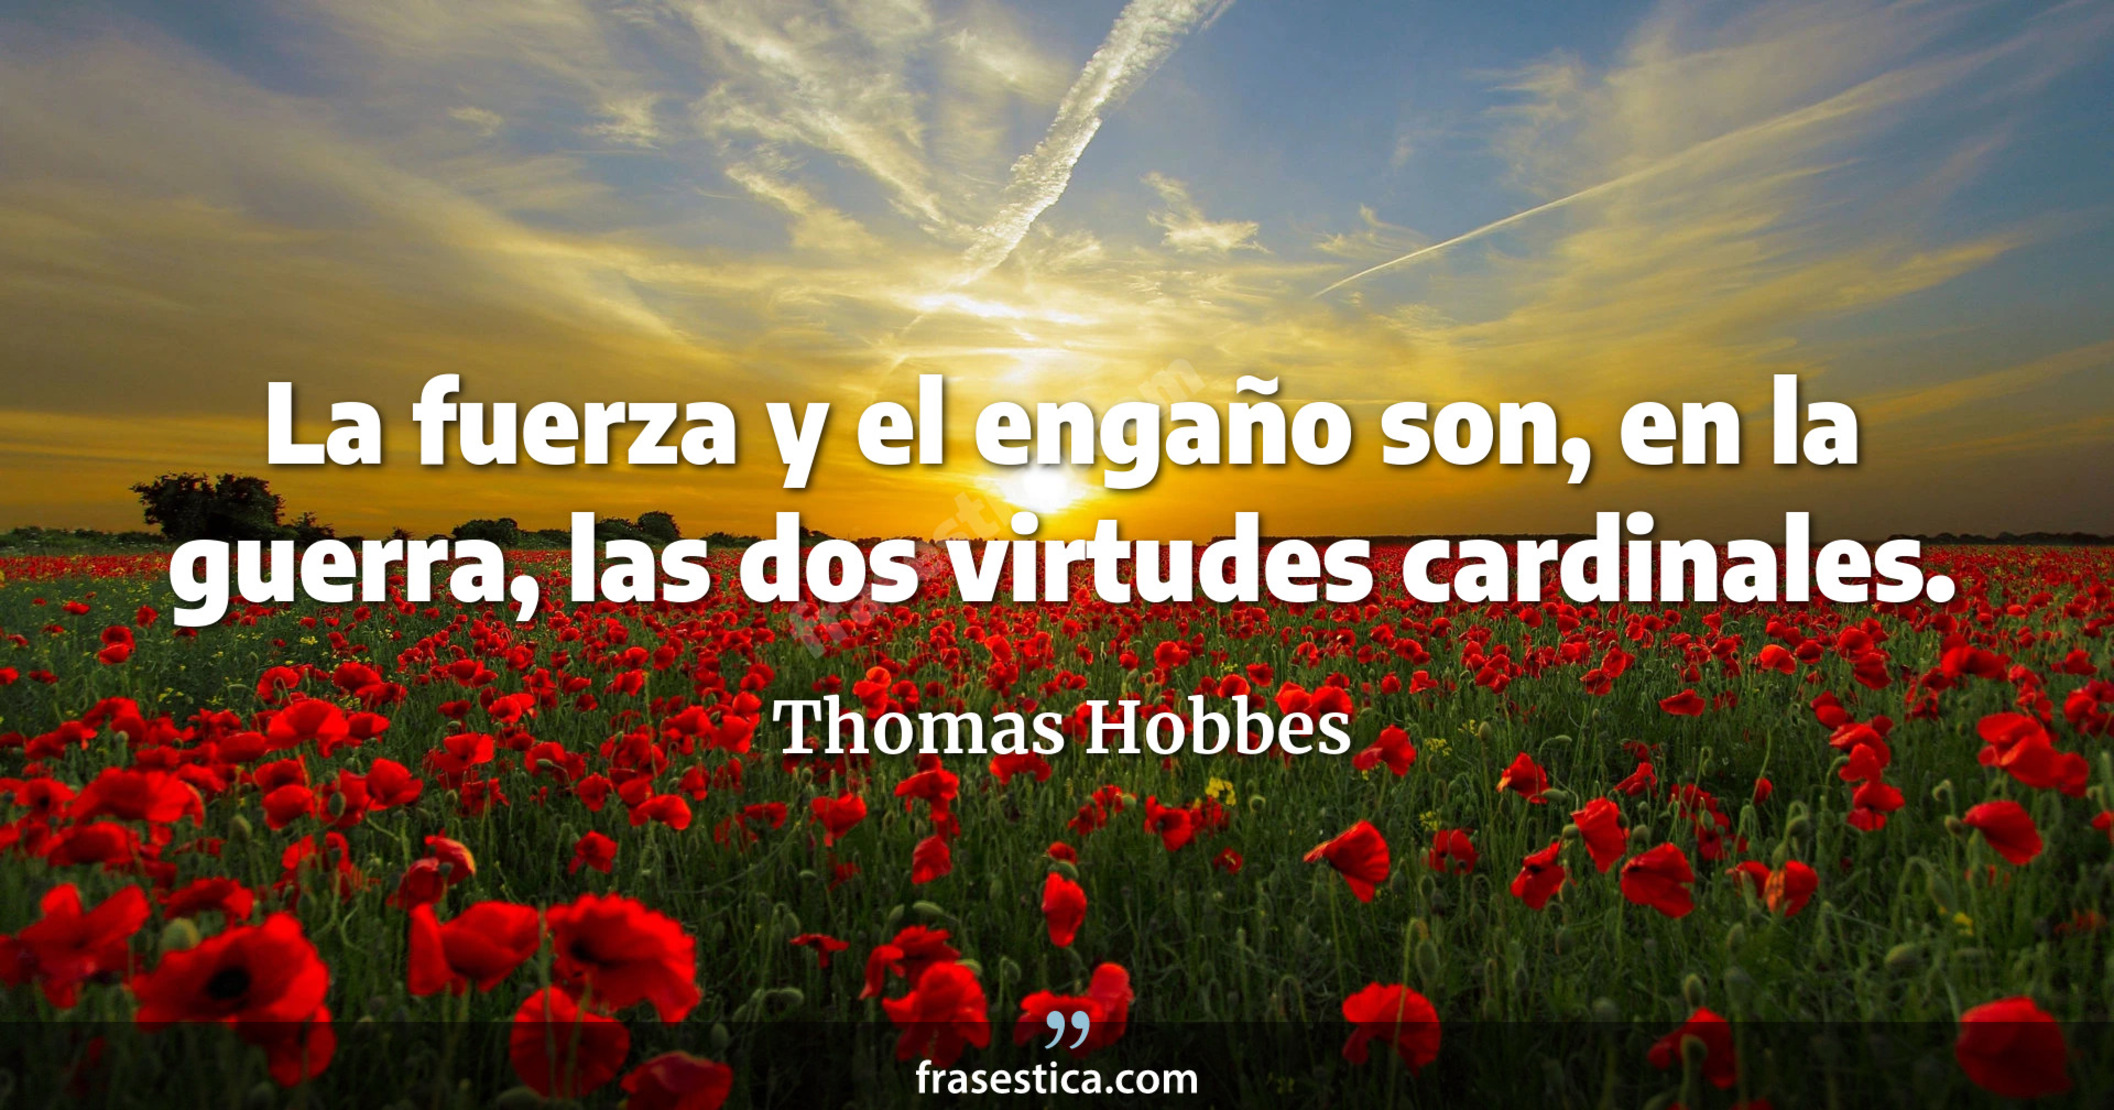 La fuerza y el engaño son, en la guerra, las dos virtudes cardinales. - Thomas Hobbes